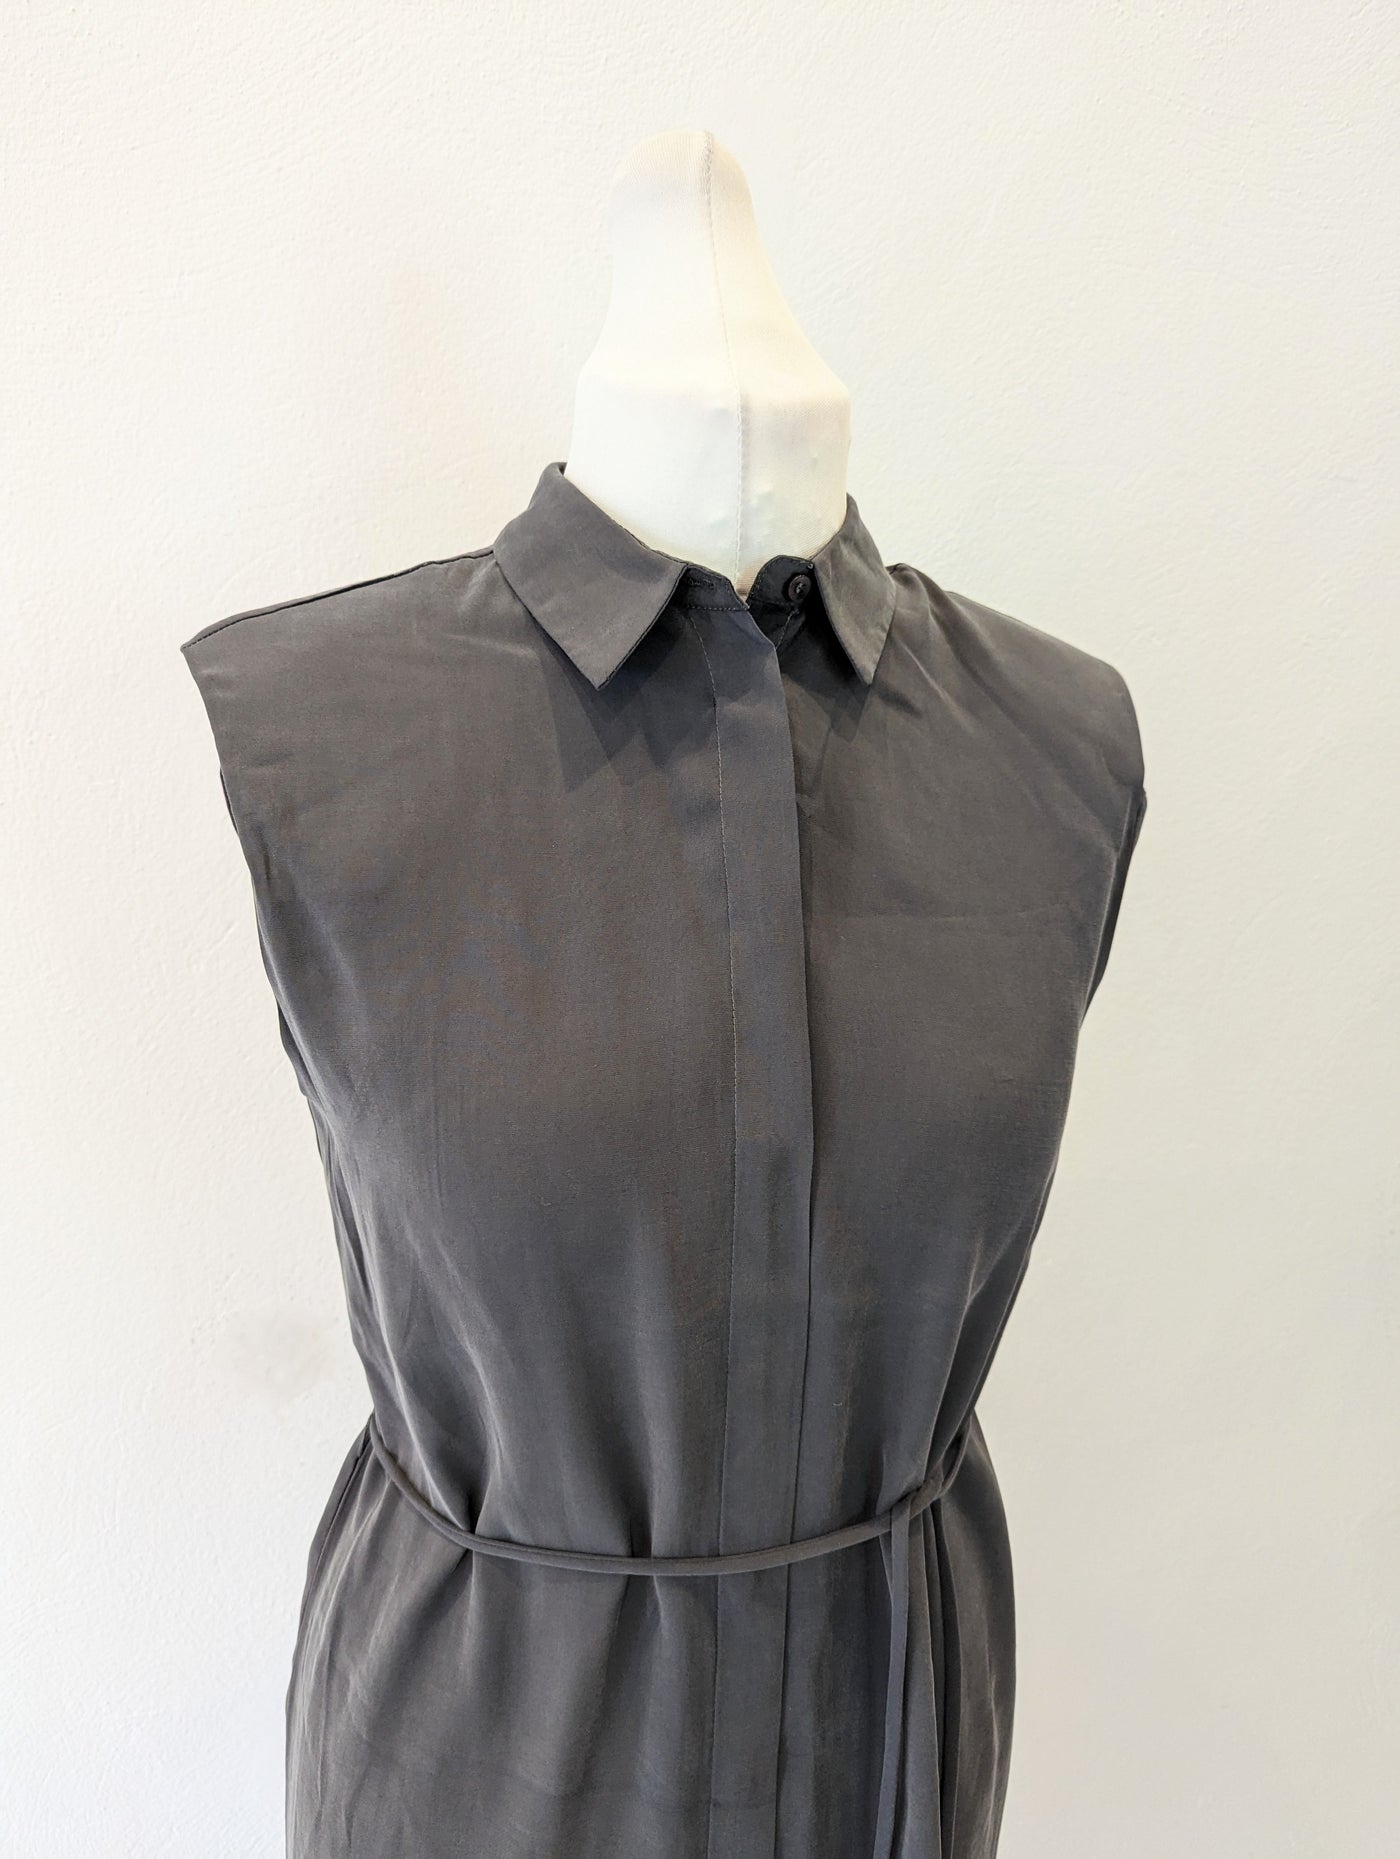 Ichi grey sleeveless dress 8/10